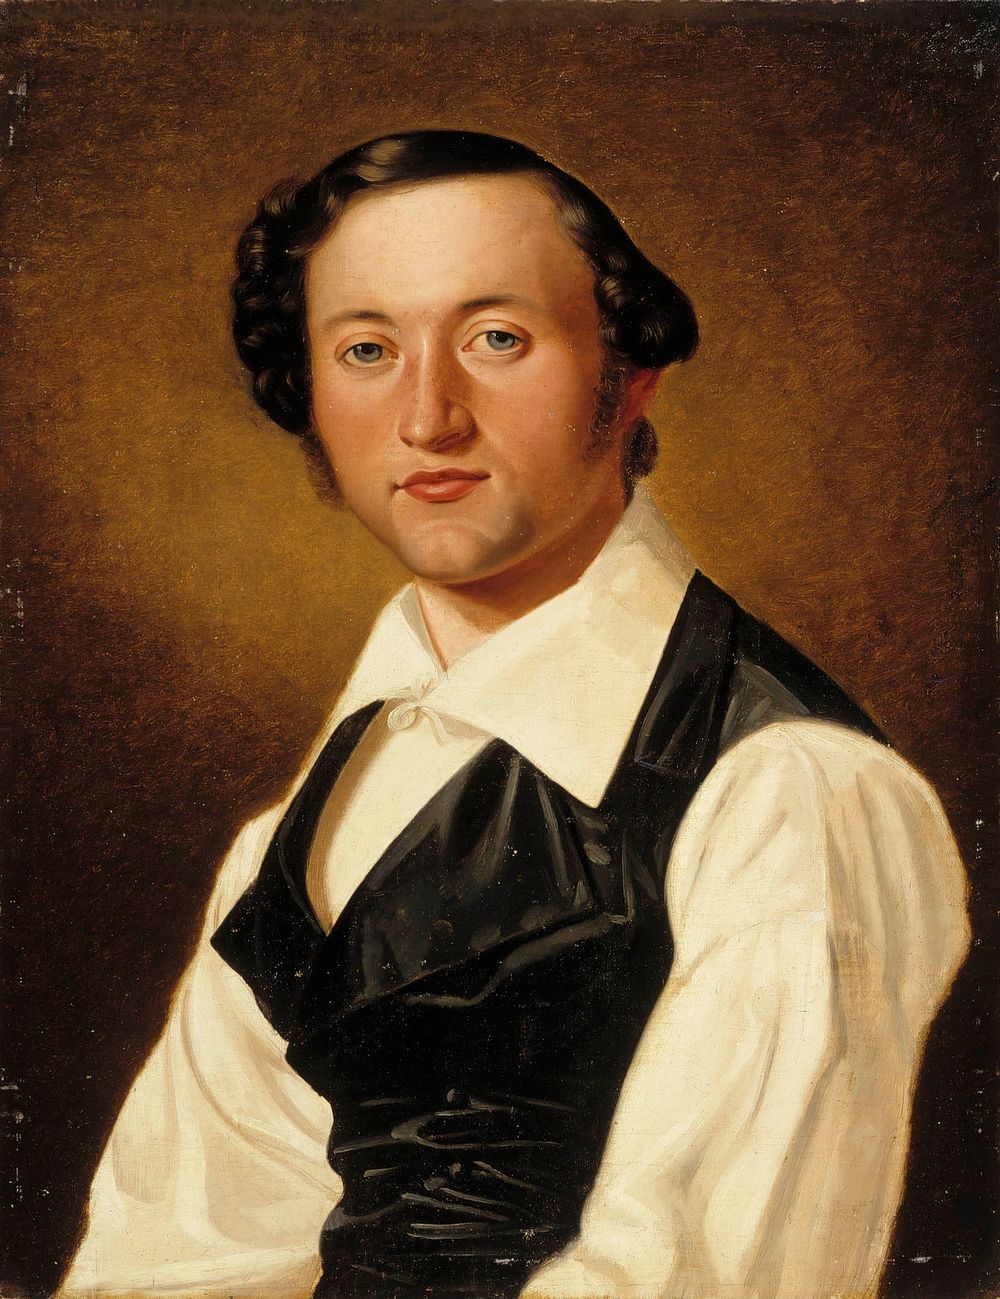 Johan knutson, 1840